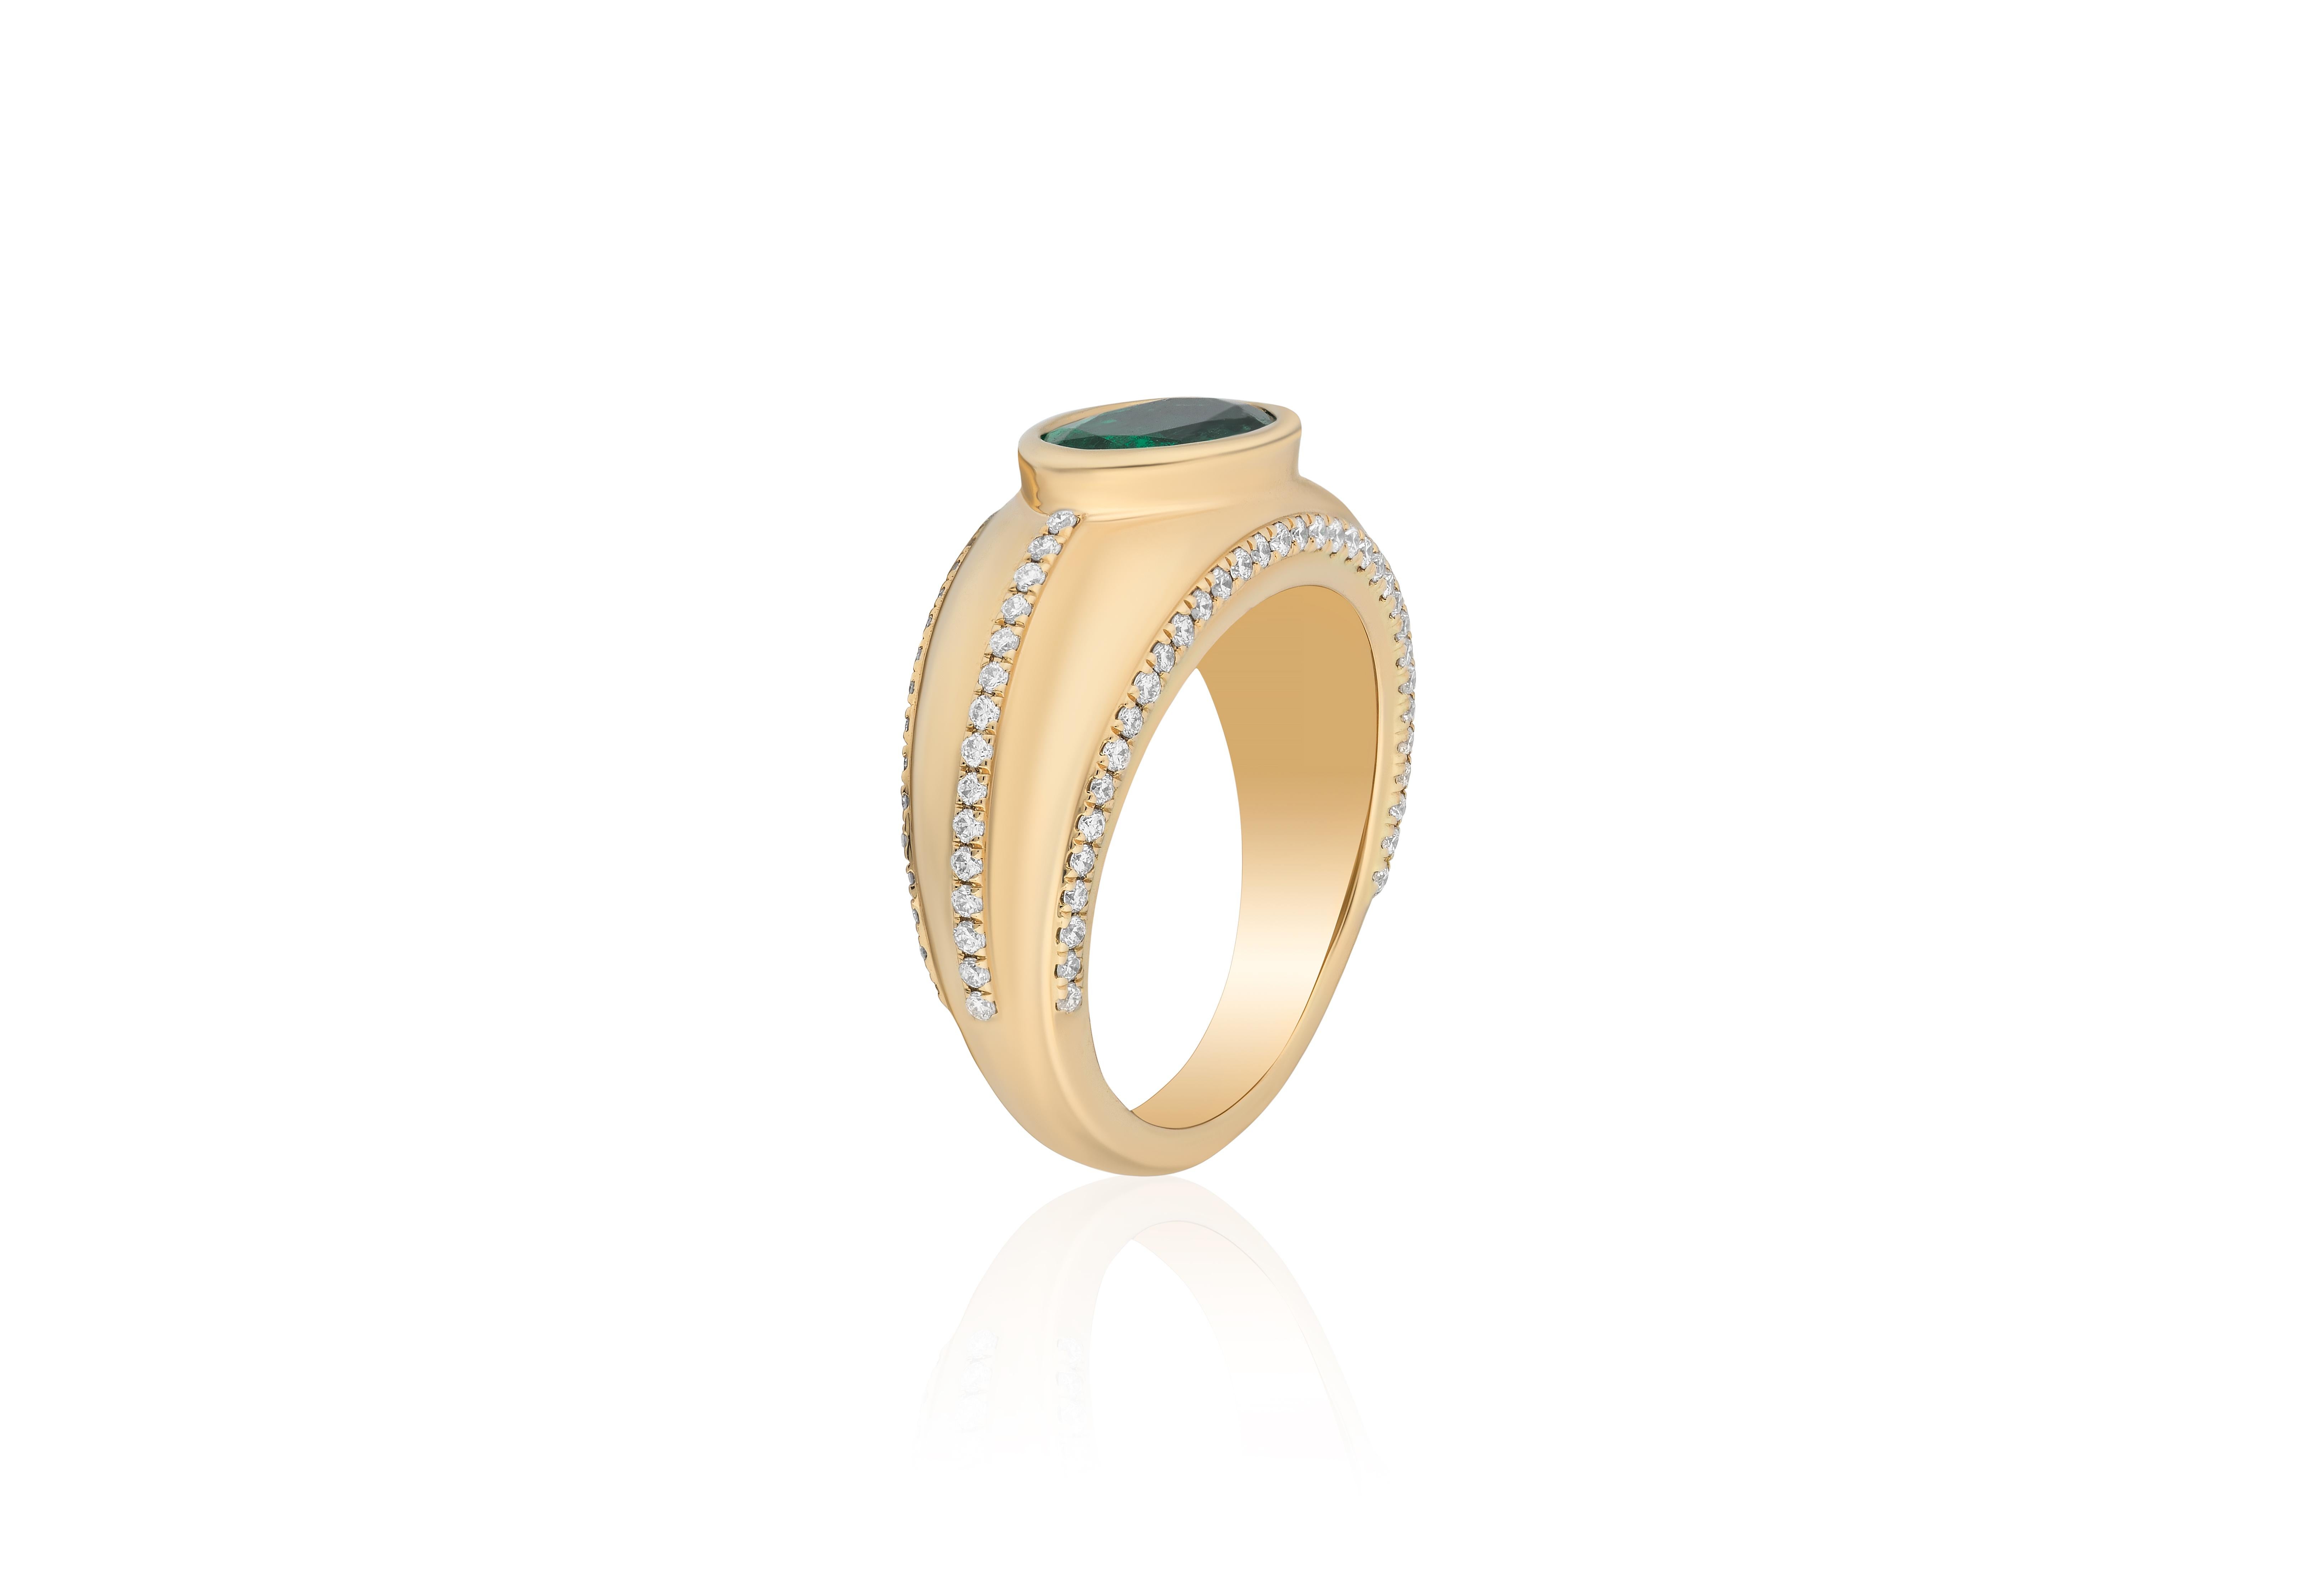 Cette bague Emerald Oval Cut Bezel Set avec diamant en or jaune 18 carats est un magnifique bijou de la Collection 'G-0ne'. Réalisée avec une attention exquise aux détails, cette bague met en valeur une magnifique émeraude de taille ovale,